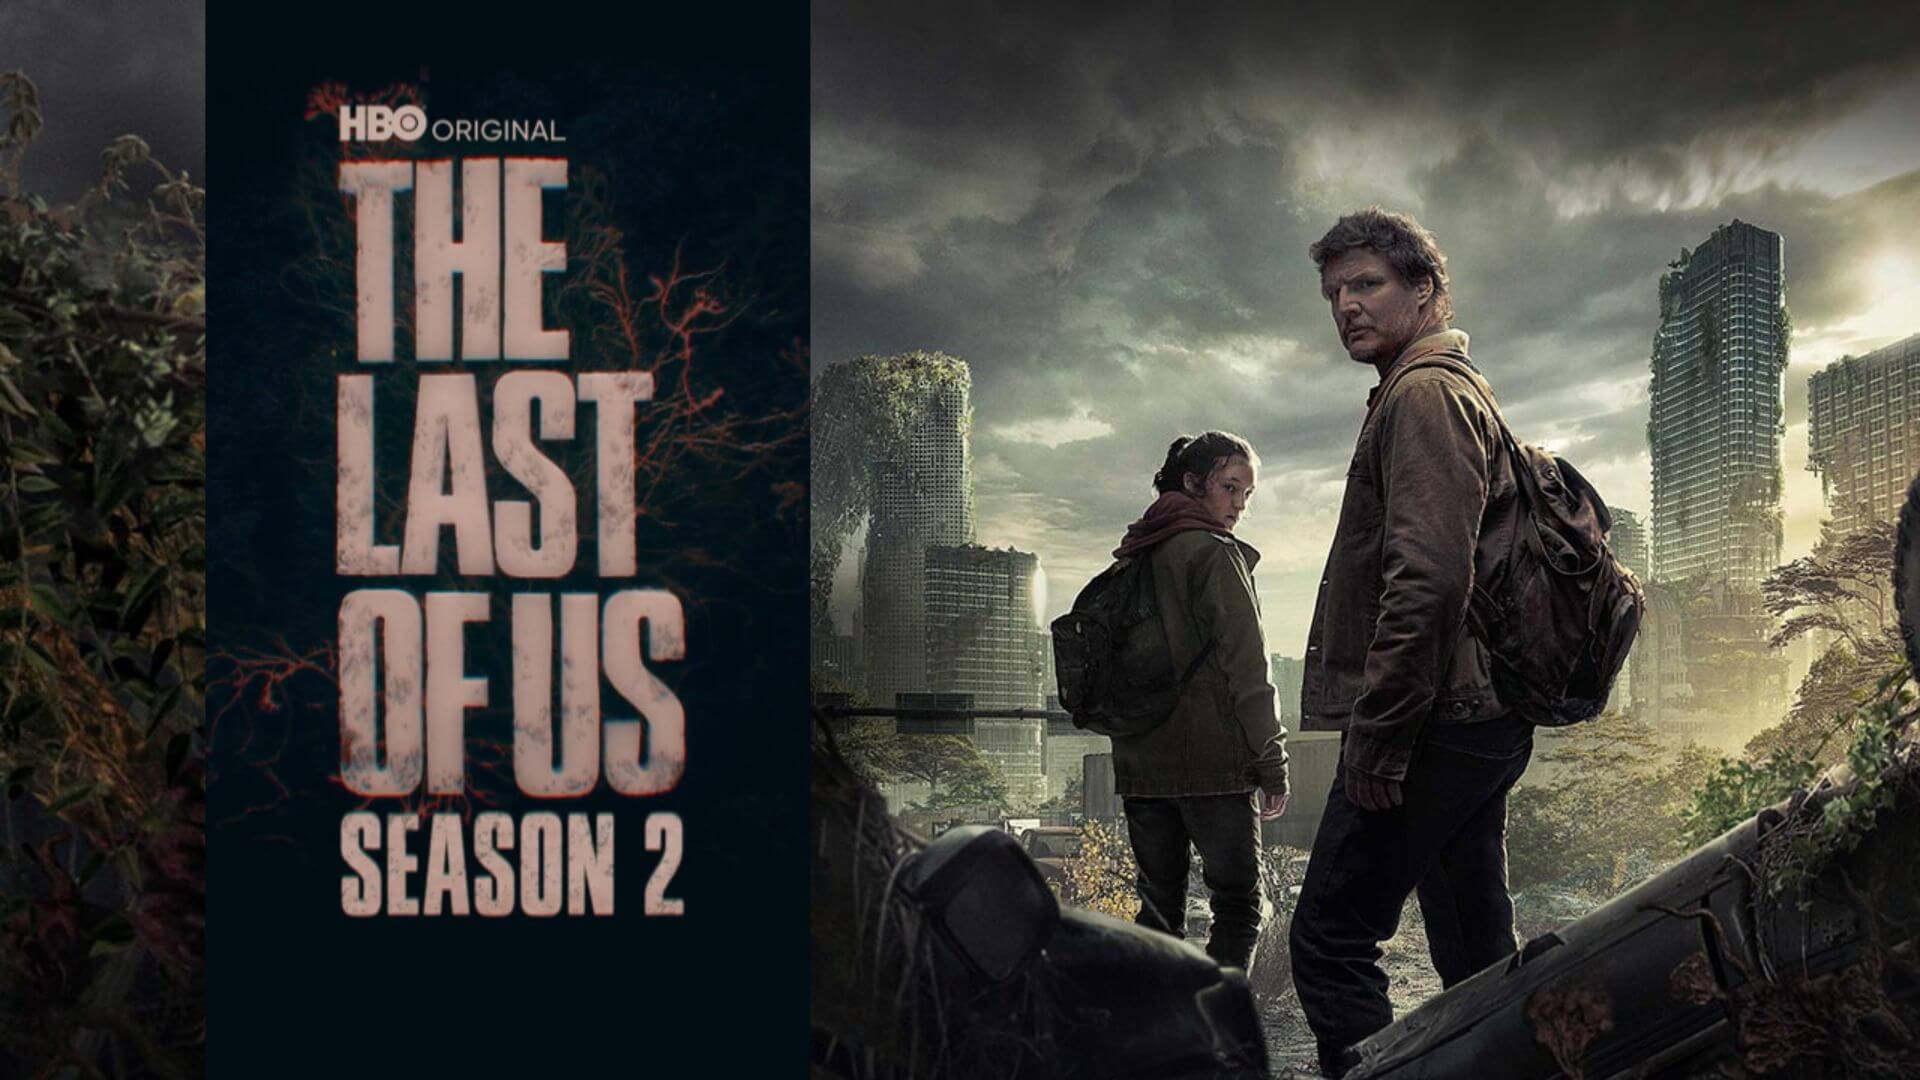 The Last of Us confirma oficialmente que tendrá una segunda temporada